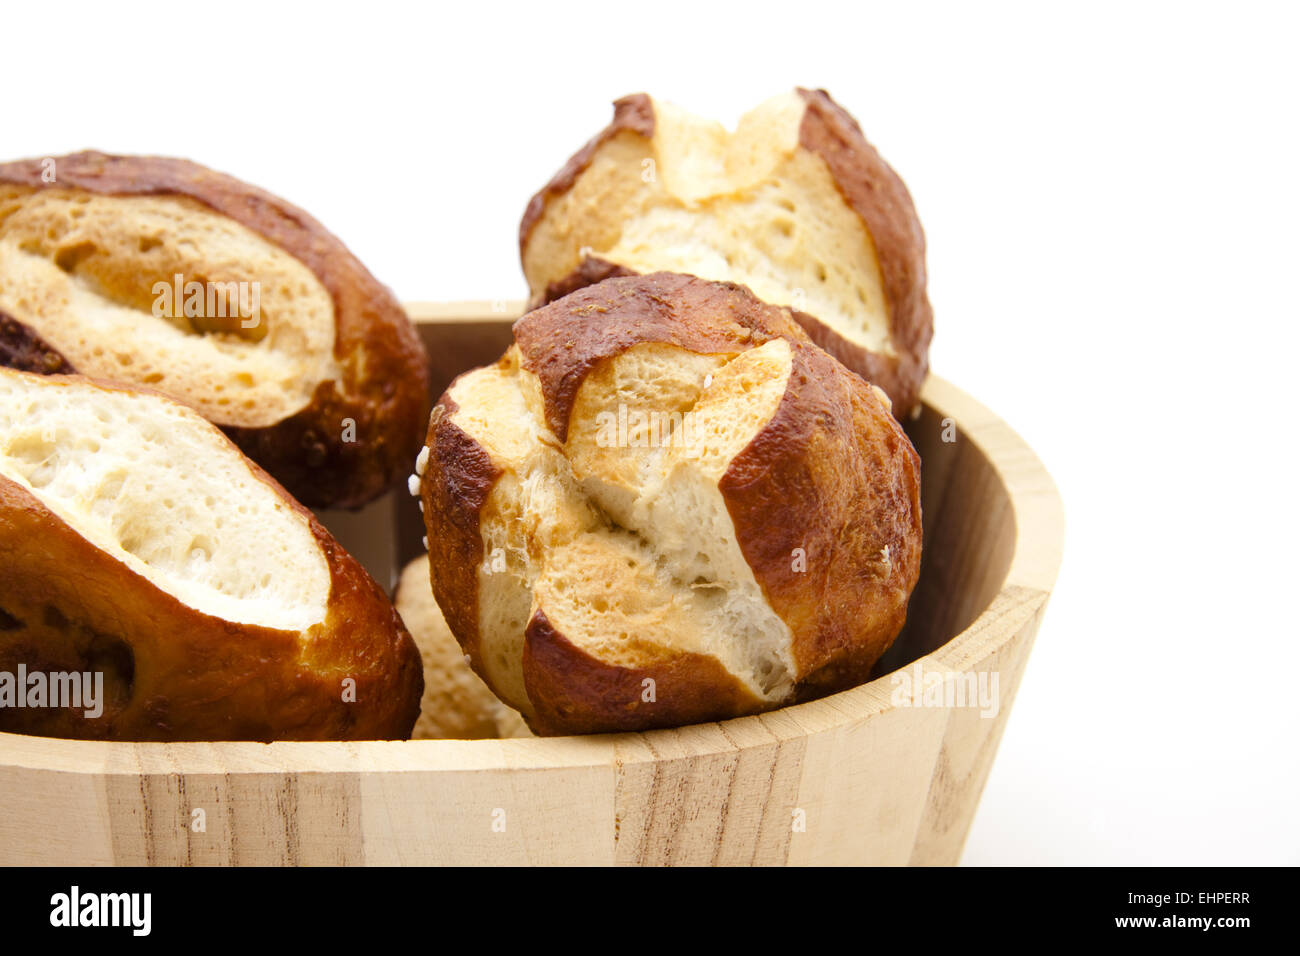 Lye bread rolls in wooden box Stock Photo